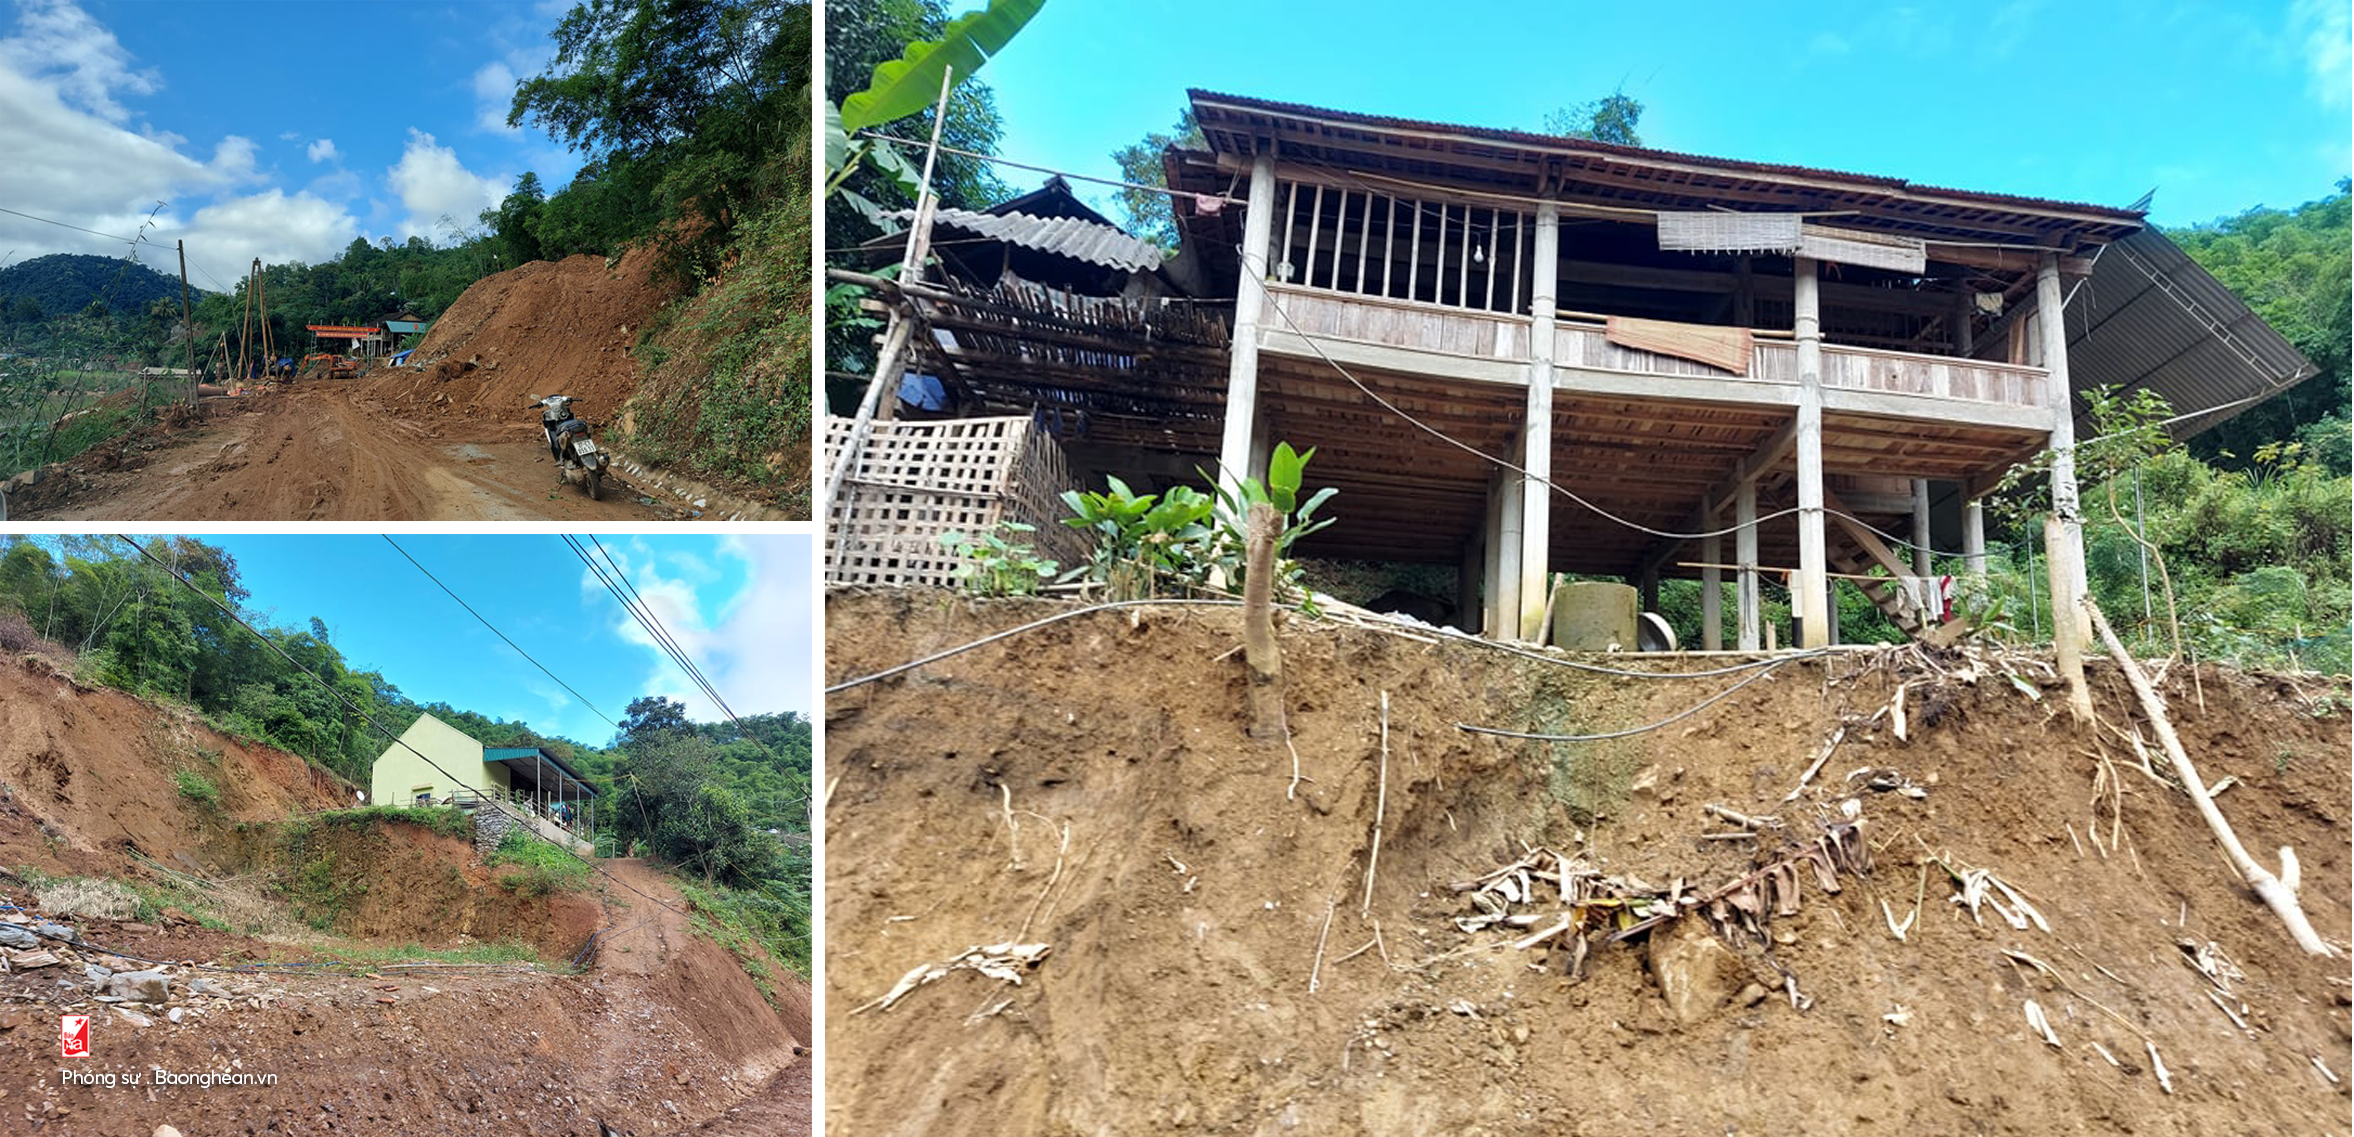 Tình trạng sạt lở đất đã diễn ra trên địa bàn miền núi của tỉnh, gây nên những thiệt hại lớn về tài sản, trong khi các hộ dân liên quan hết sức khó khăn, vất vả.